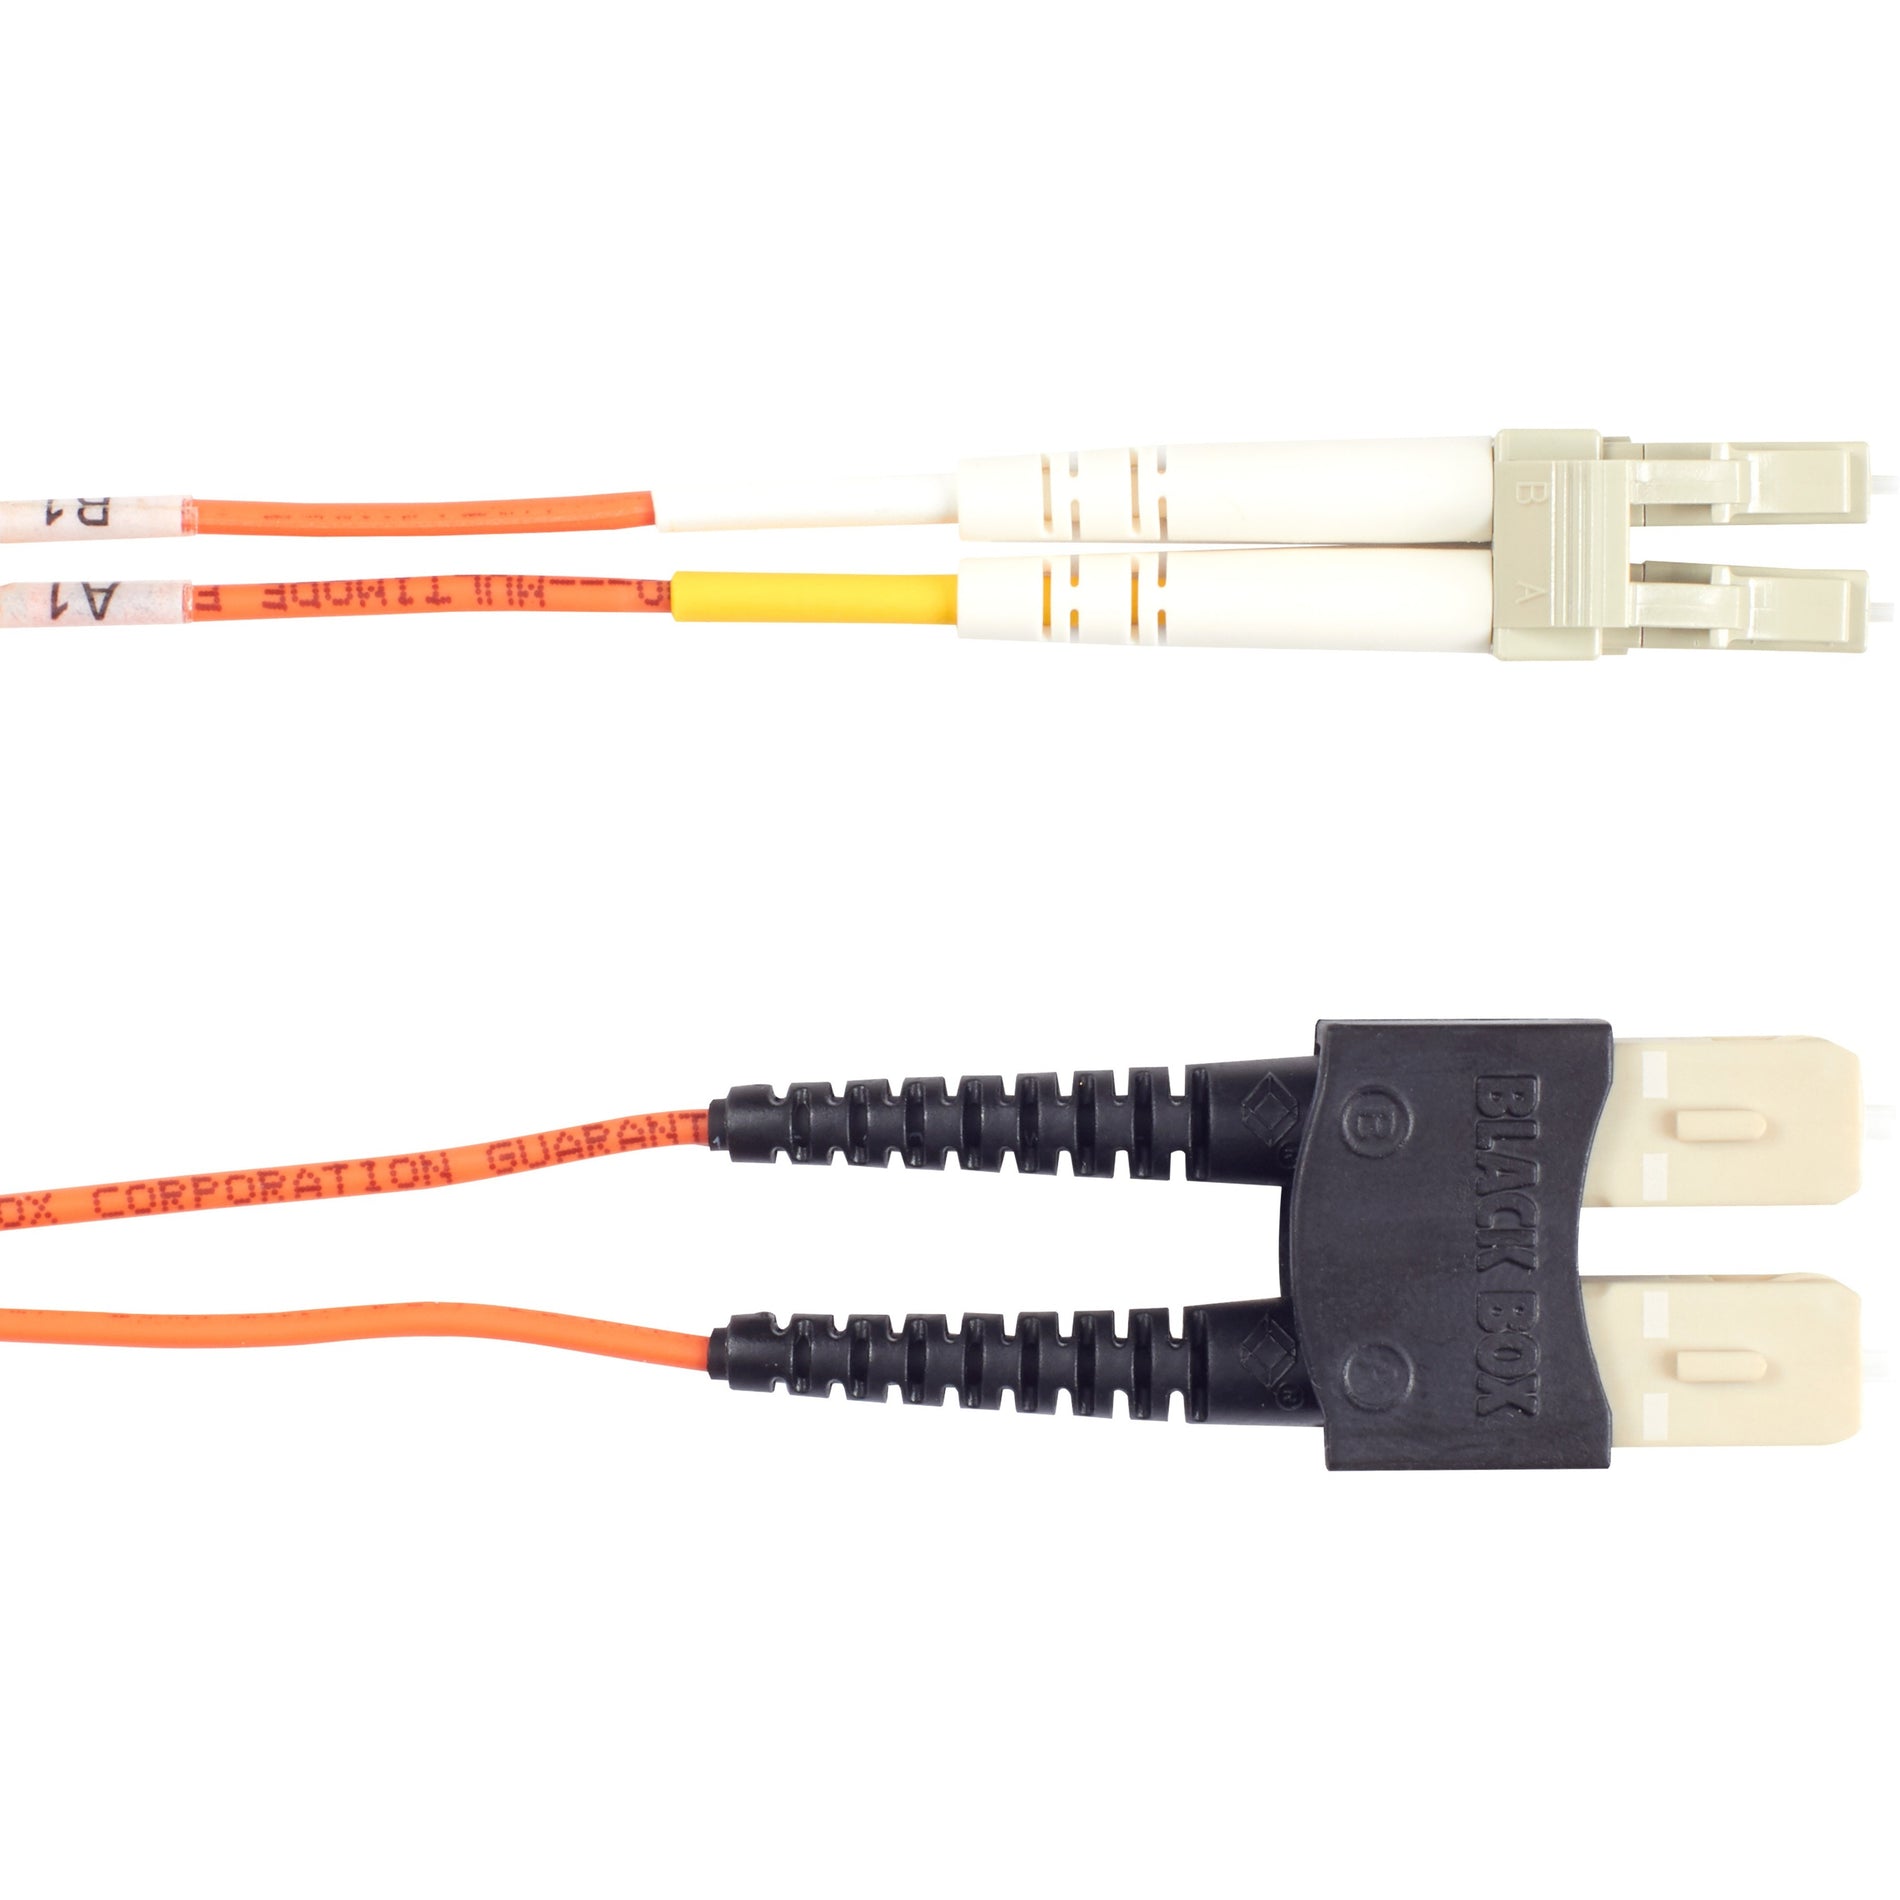 Black Box EFN110-003M-SCLC Fiber Optic Duplex Patch Network Cable, Multi-mode, 9.80 ft, SC to LC Male Connectors, Orange Jacket